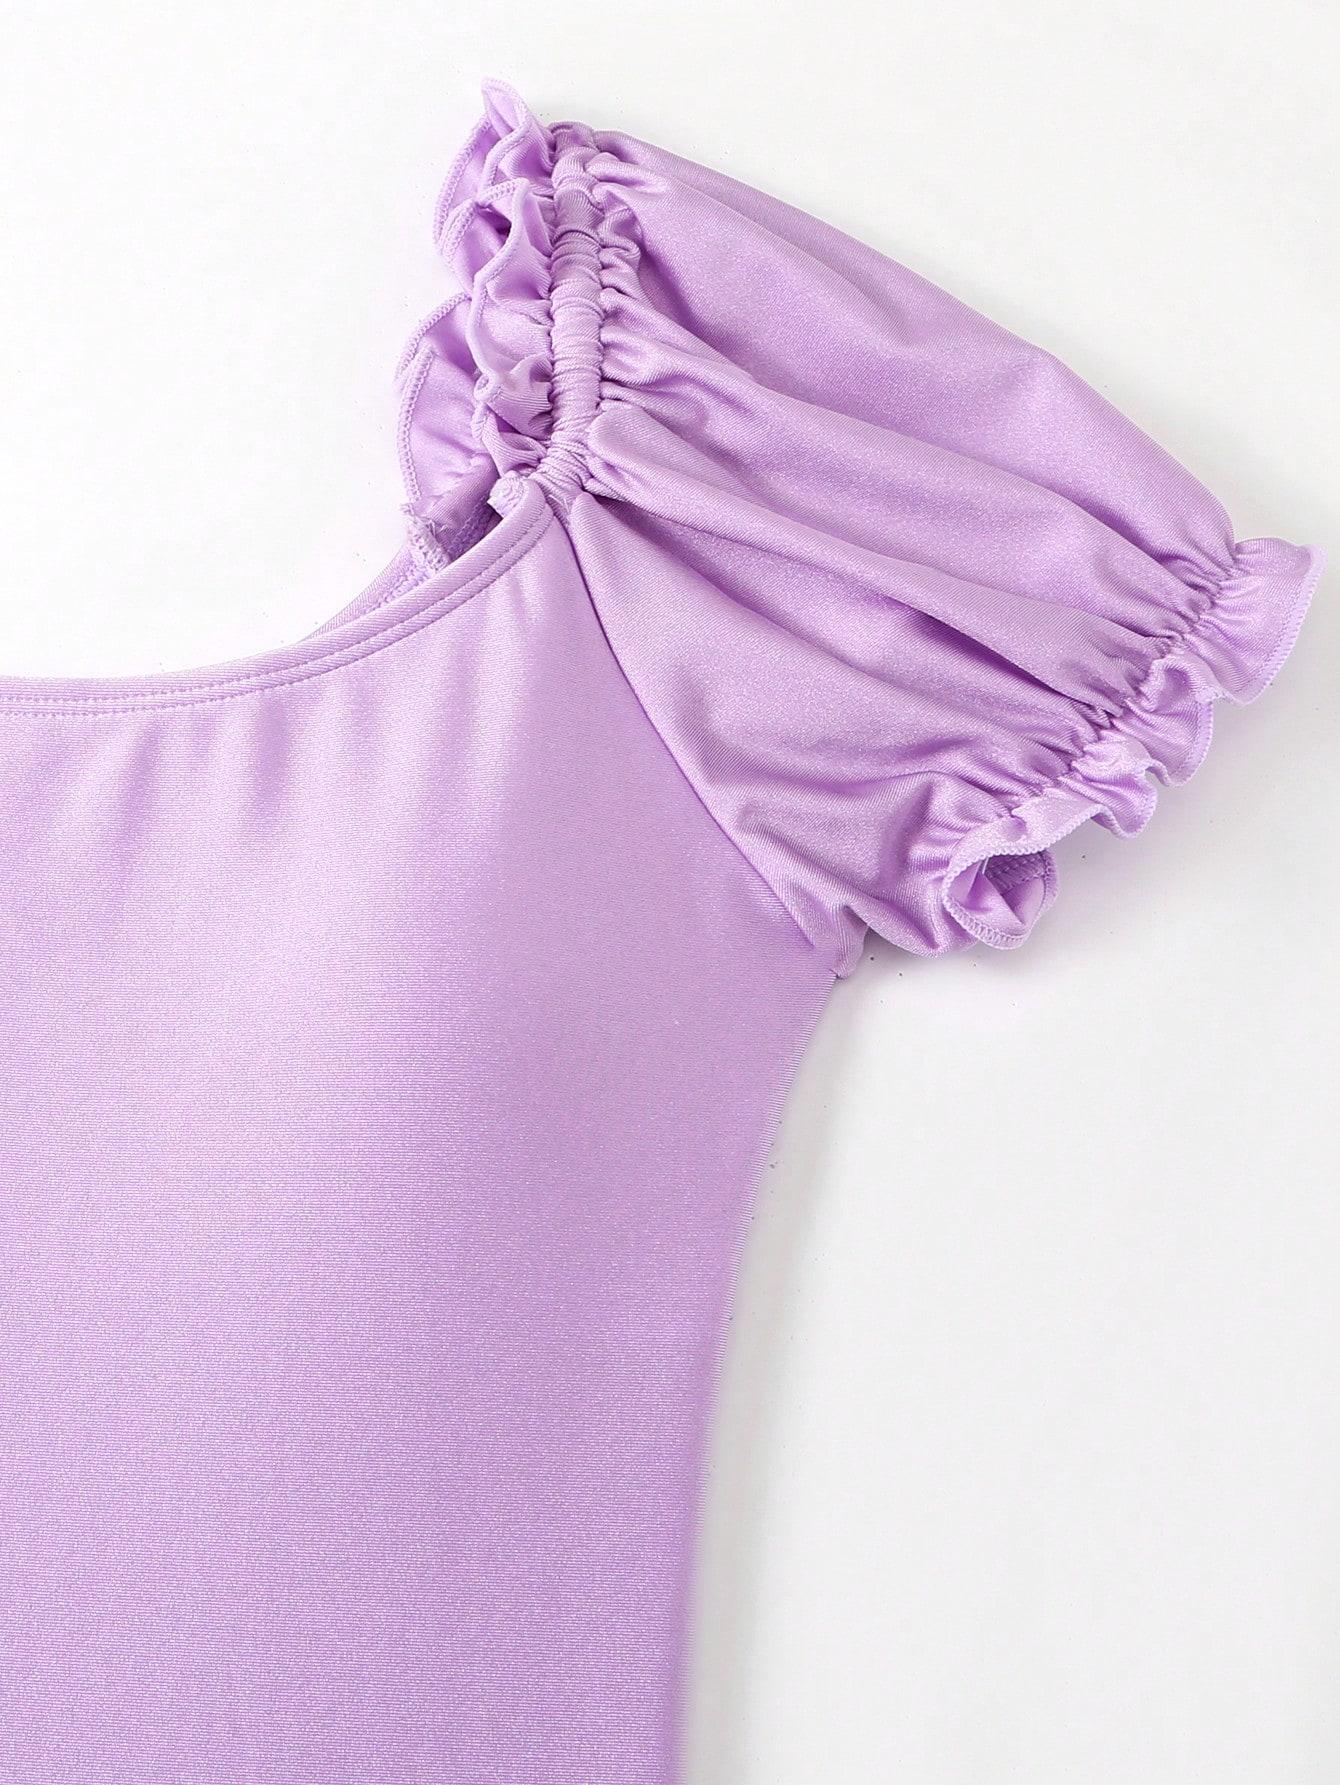 fioletowy jednoczęściowy strój kąpielowy połysk